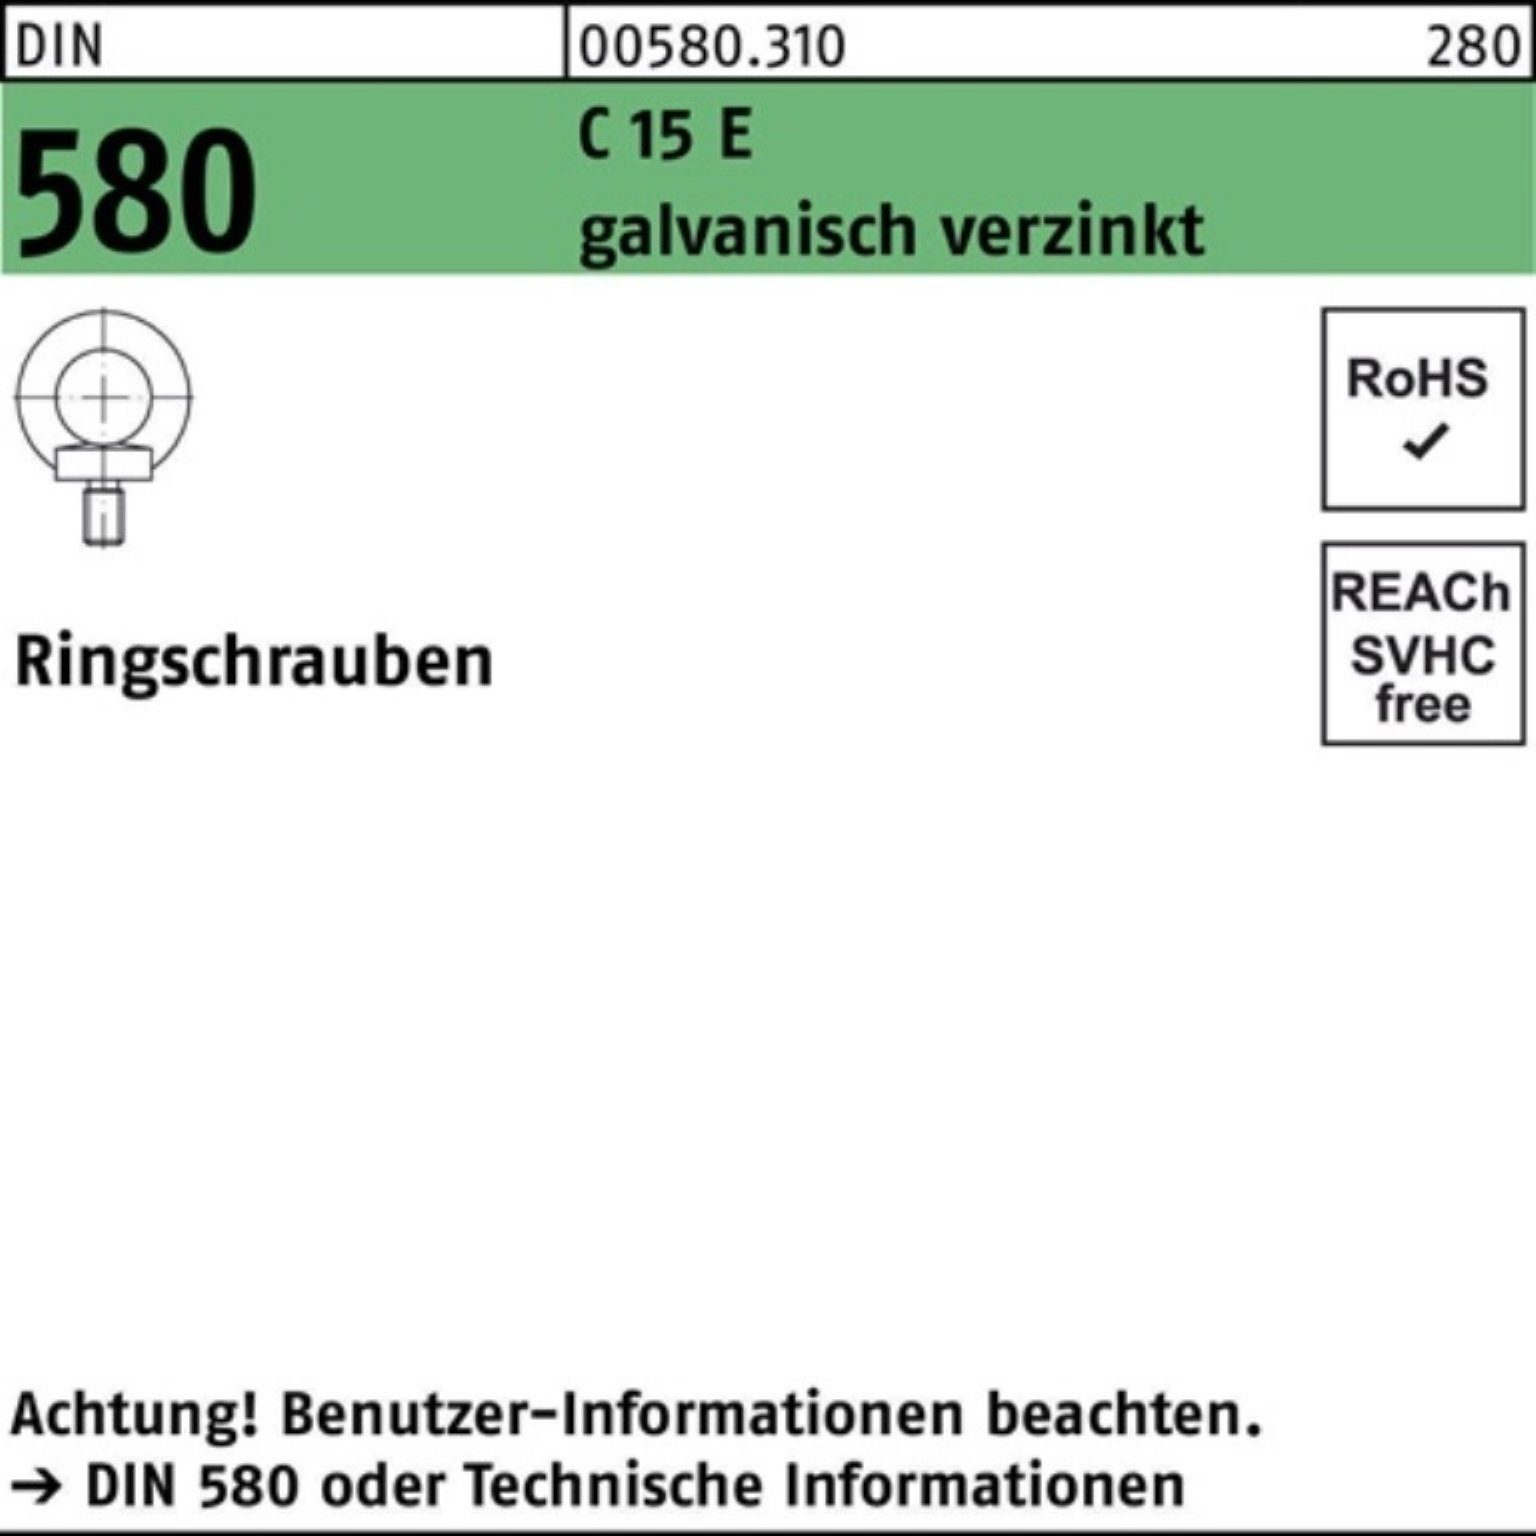 Reyher Schraube 100er Pack Ringschraube DIN 580 M18 C 15 E galv.verz. 1 Stück DIN 580